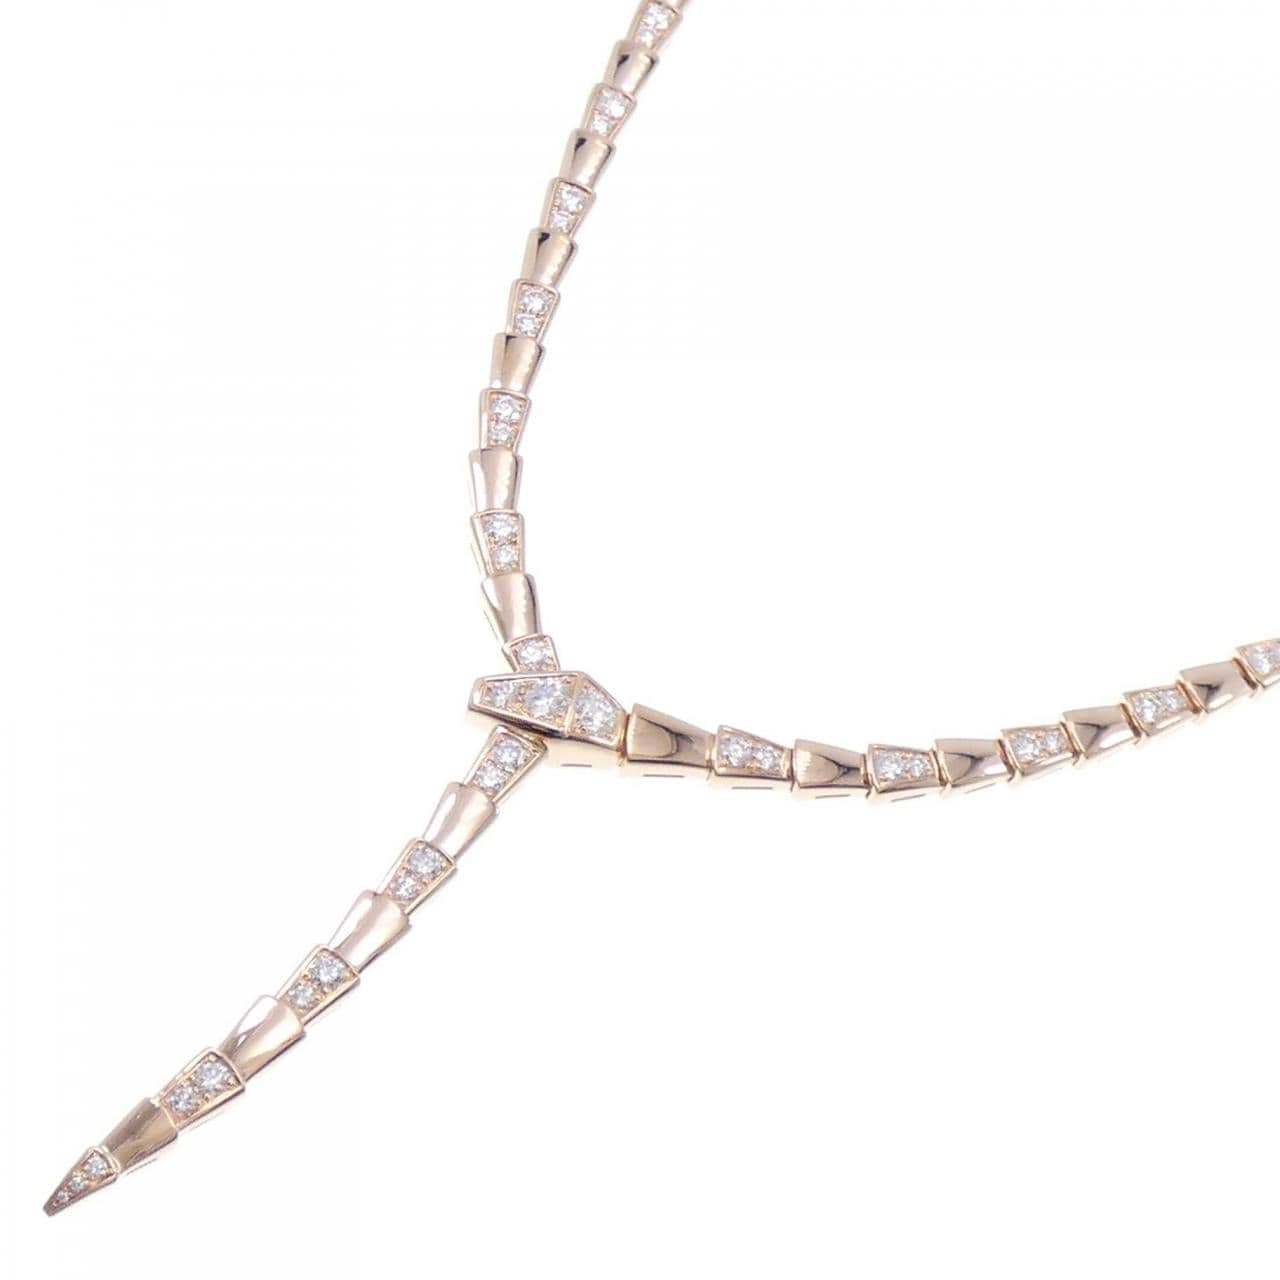 BVLGARI serpenti viper necklace